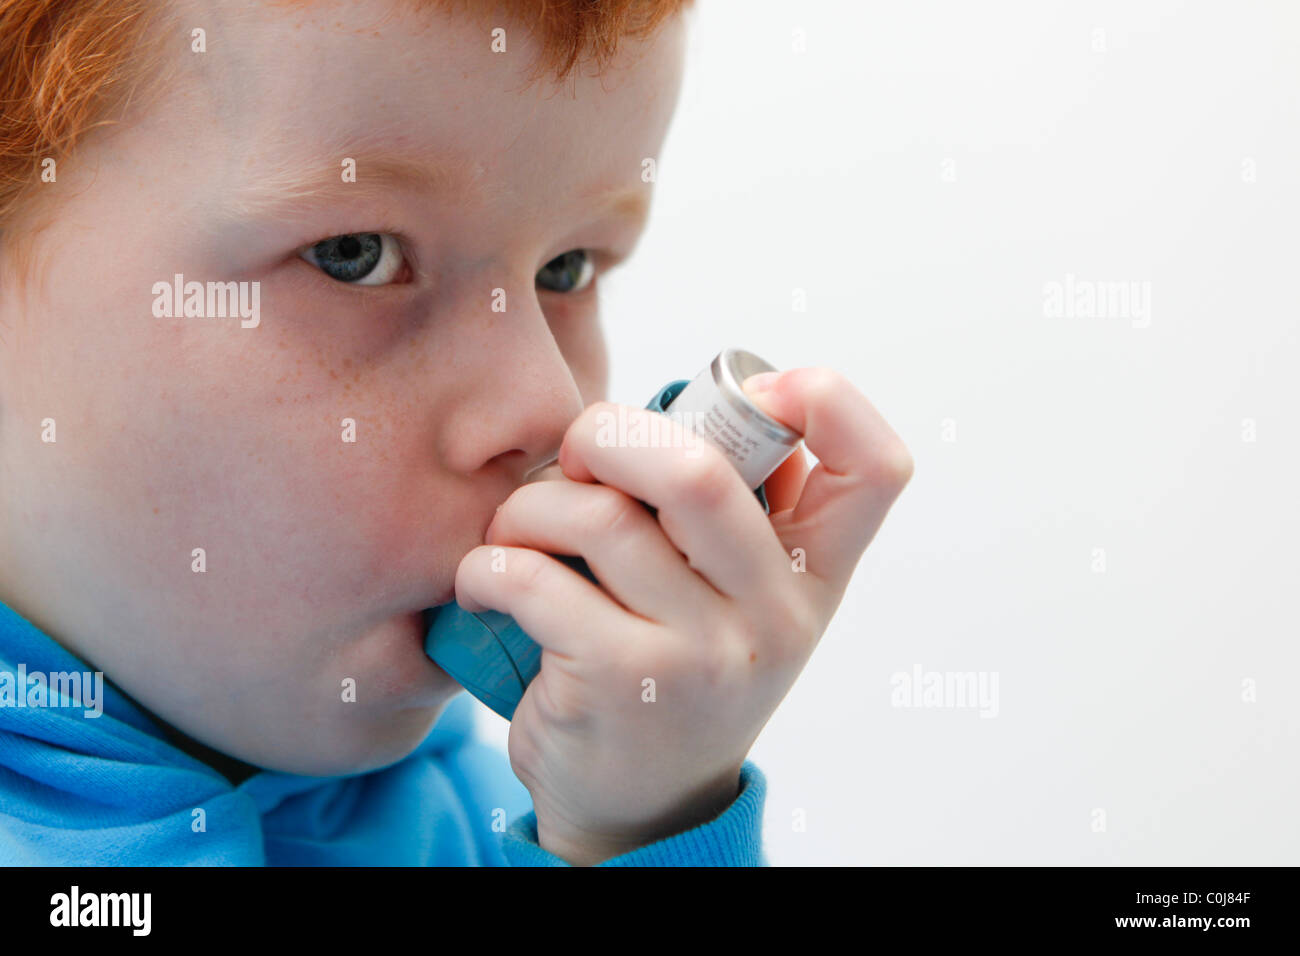 Kleiner Junge mit seinem Asthma-Inhalator um Symptome zu lindern. Stockfoto